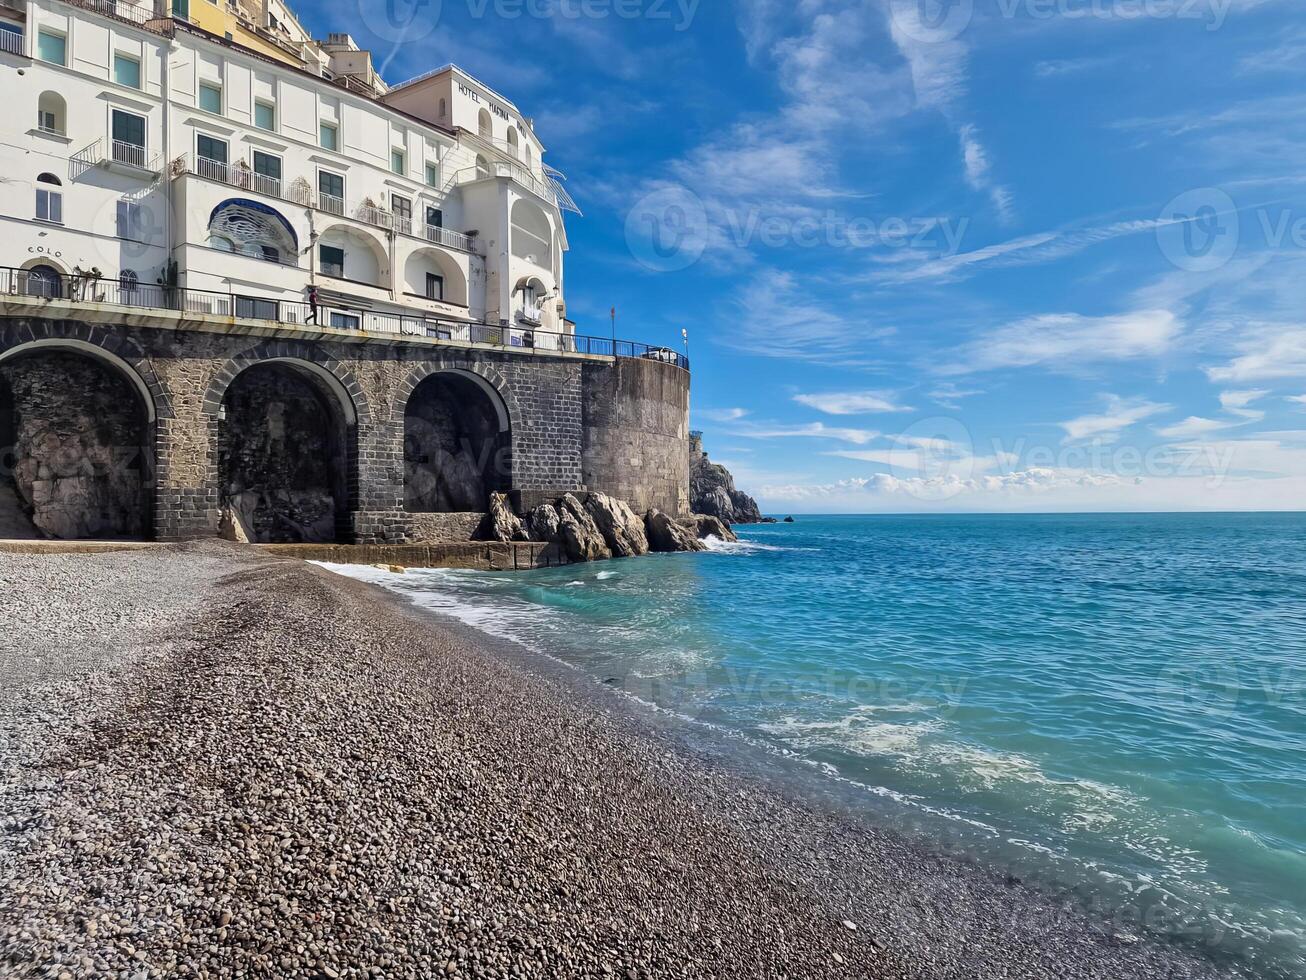 de prachtig amalfi kust in Italië is gevierd voor haar adembenemend kust- vergezichten, charmant dorpen, en rijk cultureel erfenis. foto